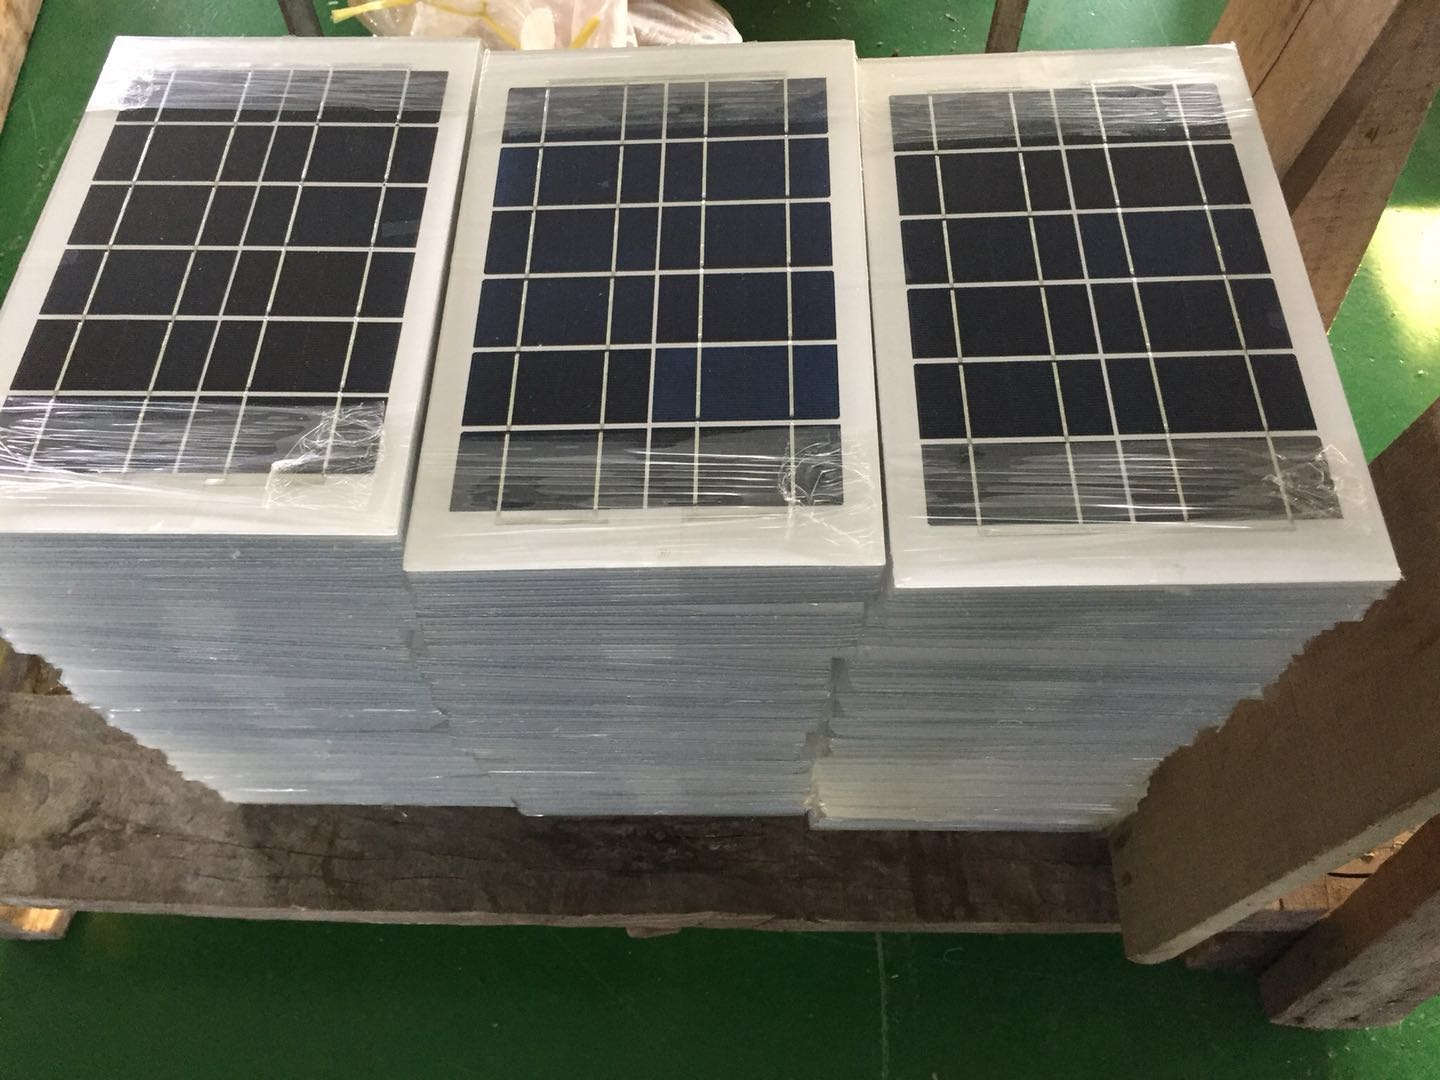 光伏发电组件 光伏发电组件厂家 光伏发电组件定做 光伏发电组件价格 太阳能板 太阳能板厂家直销 太阳能板生产厂家